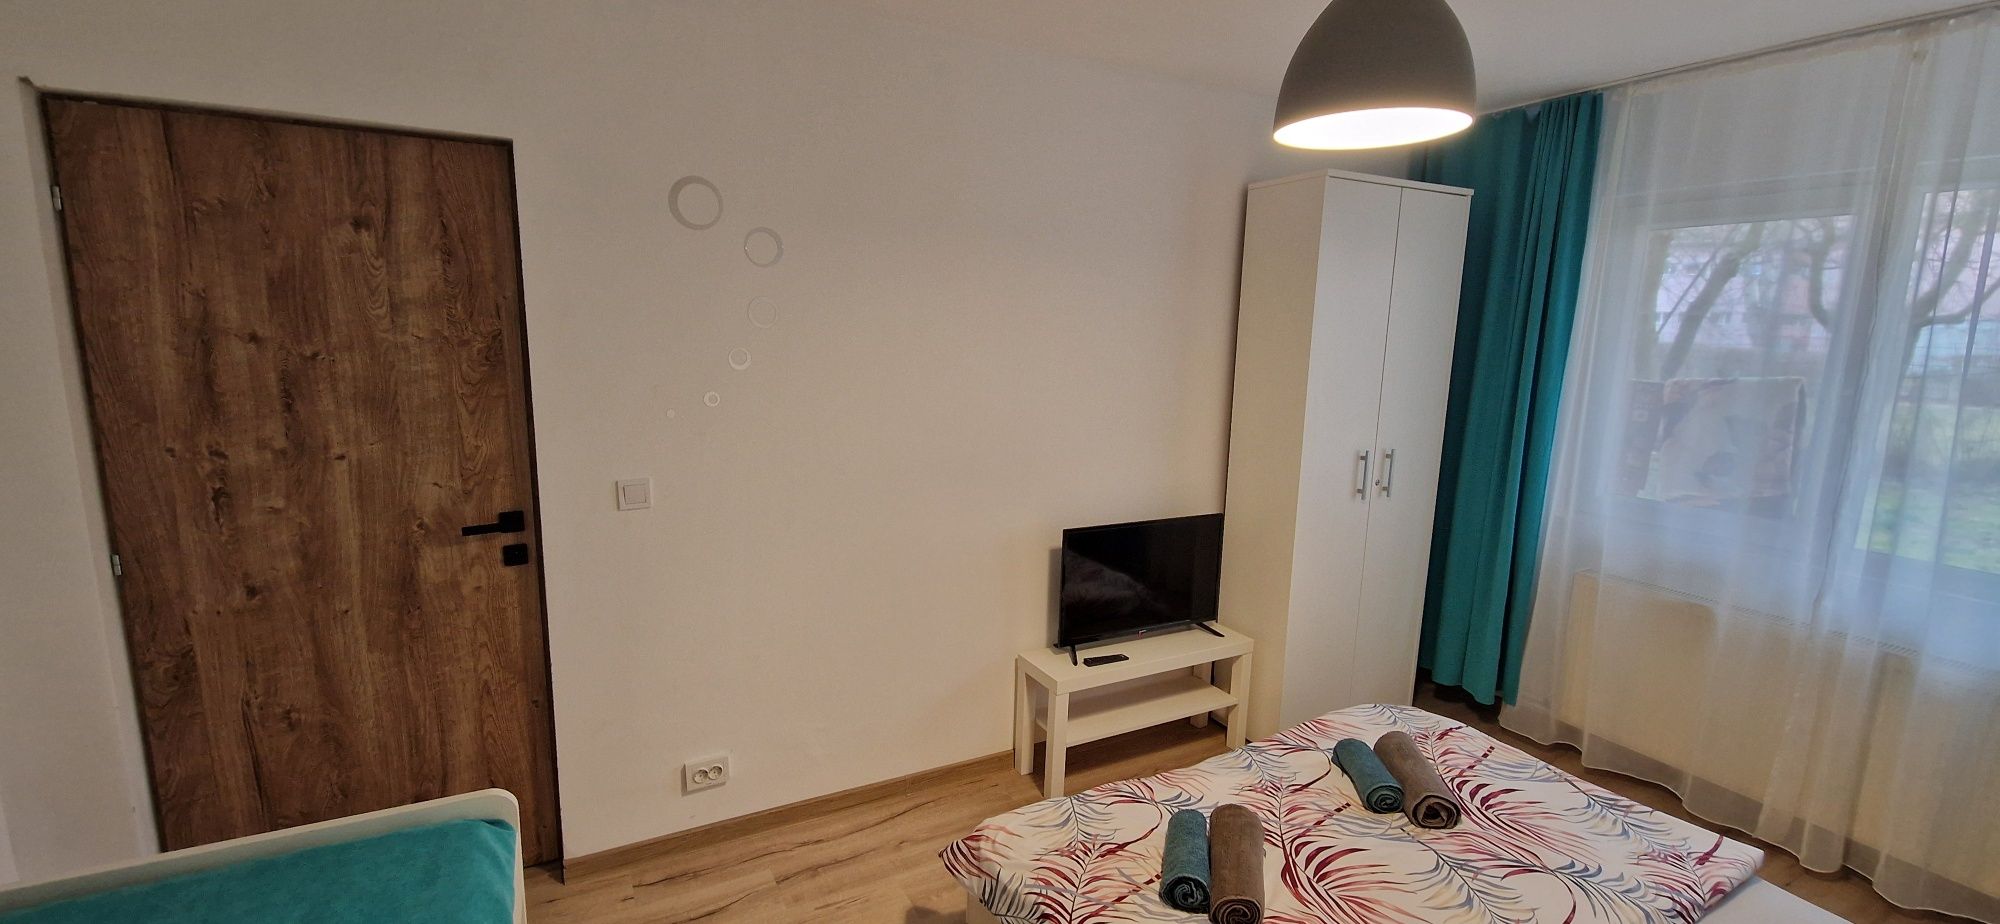 Apartament 1 camera regim hotelier - Provista Narcisei